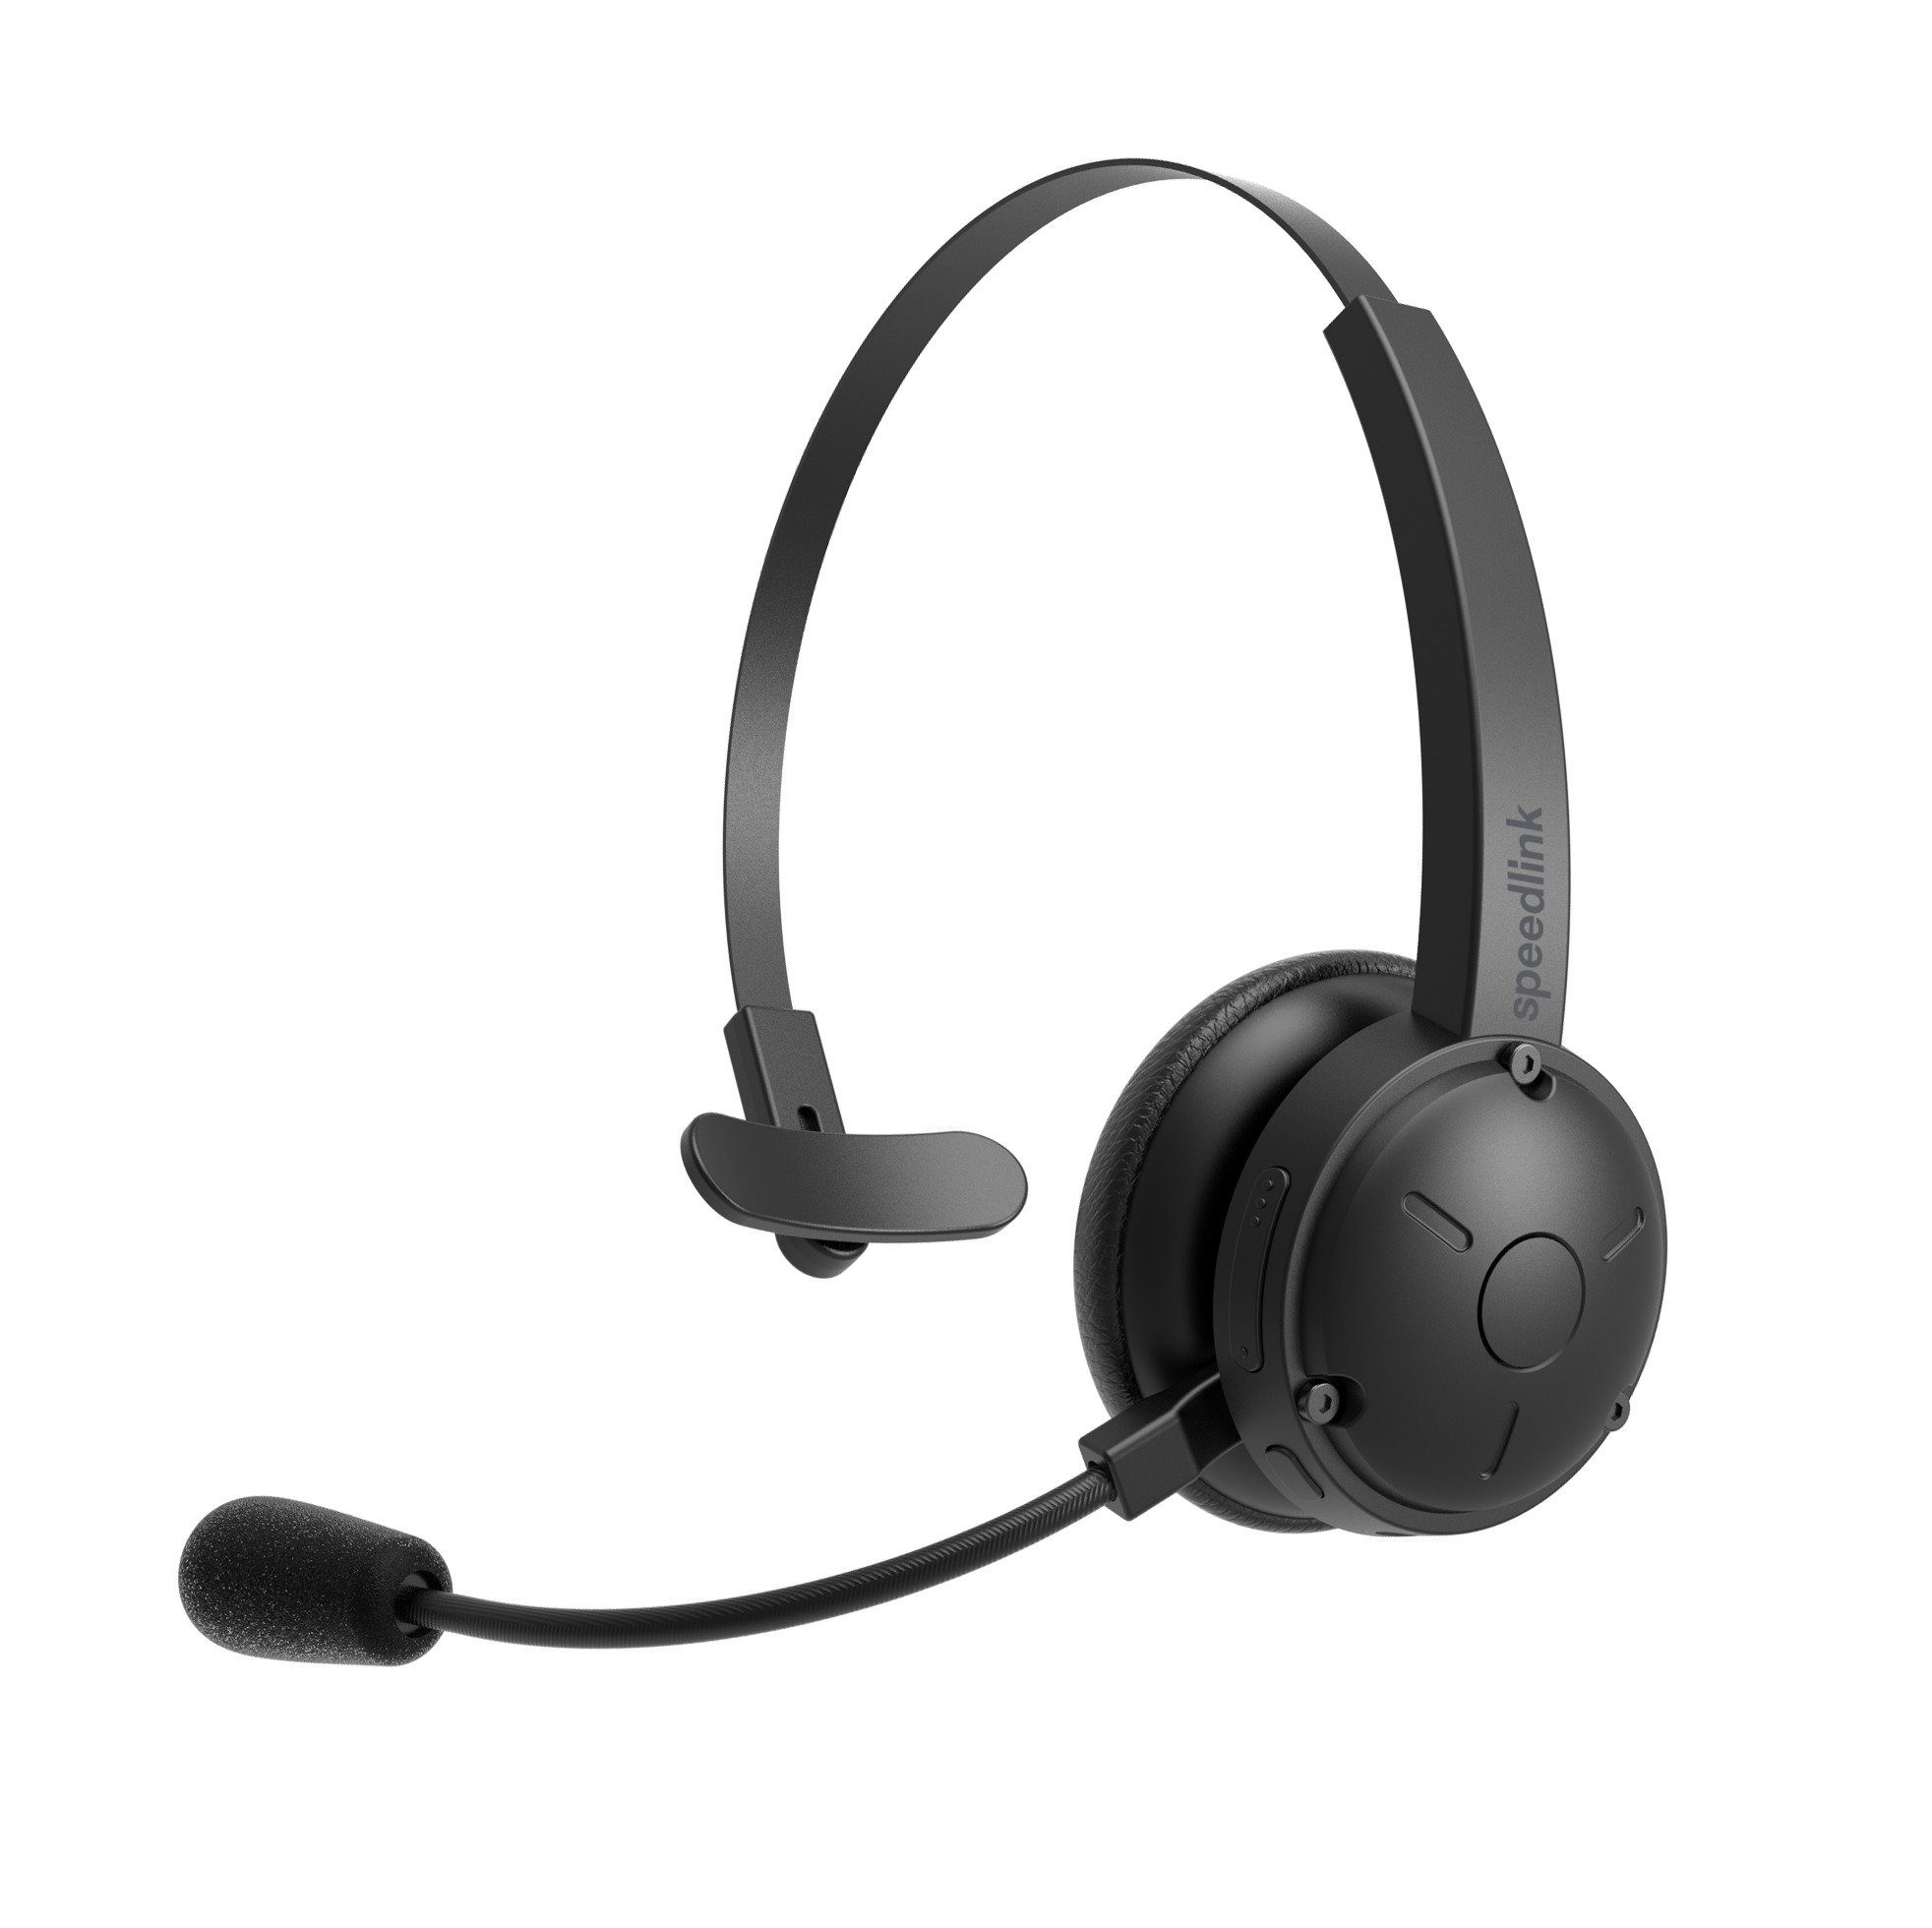 Beliebte Modelle erscheinen Speedlink SONA PRO Bluetooth Chat Wireless-Headset (mit Noise-Cancelling-Mikrofon) Headset